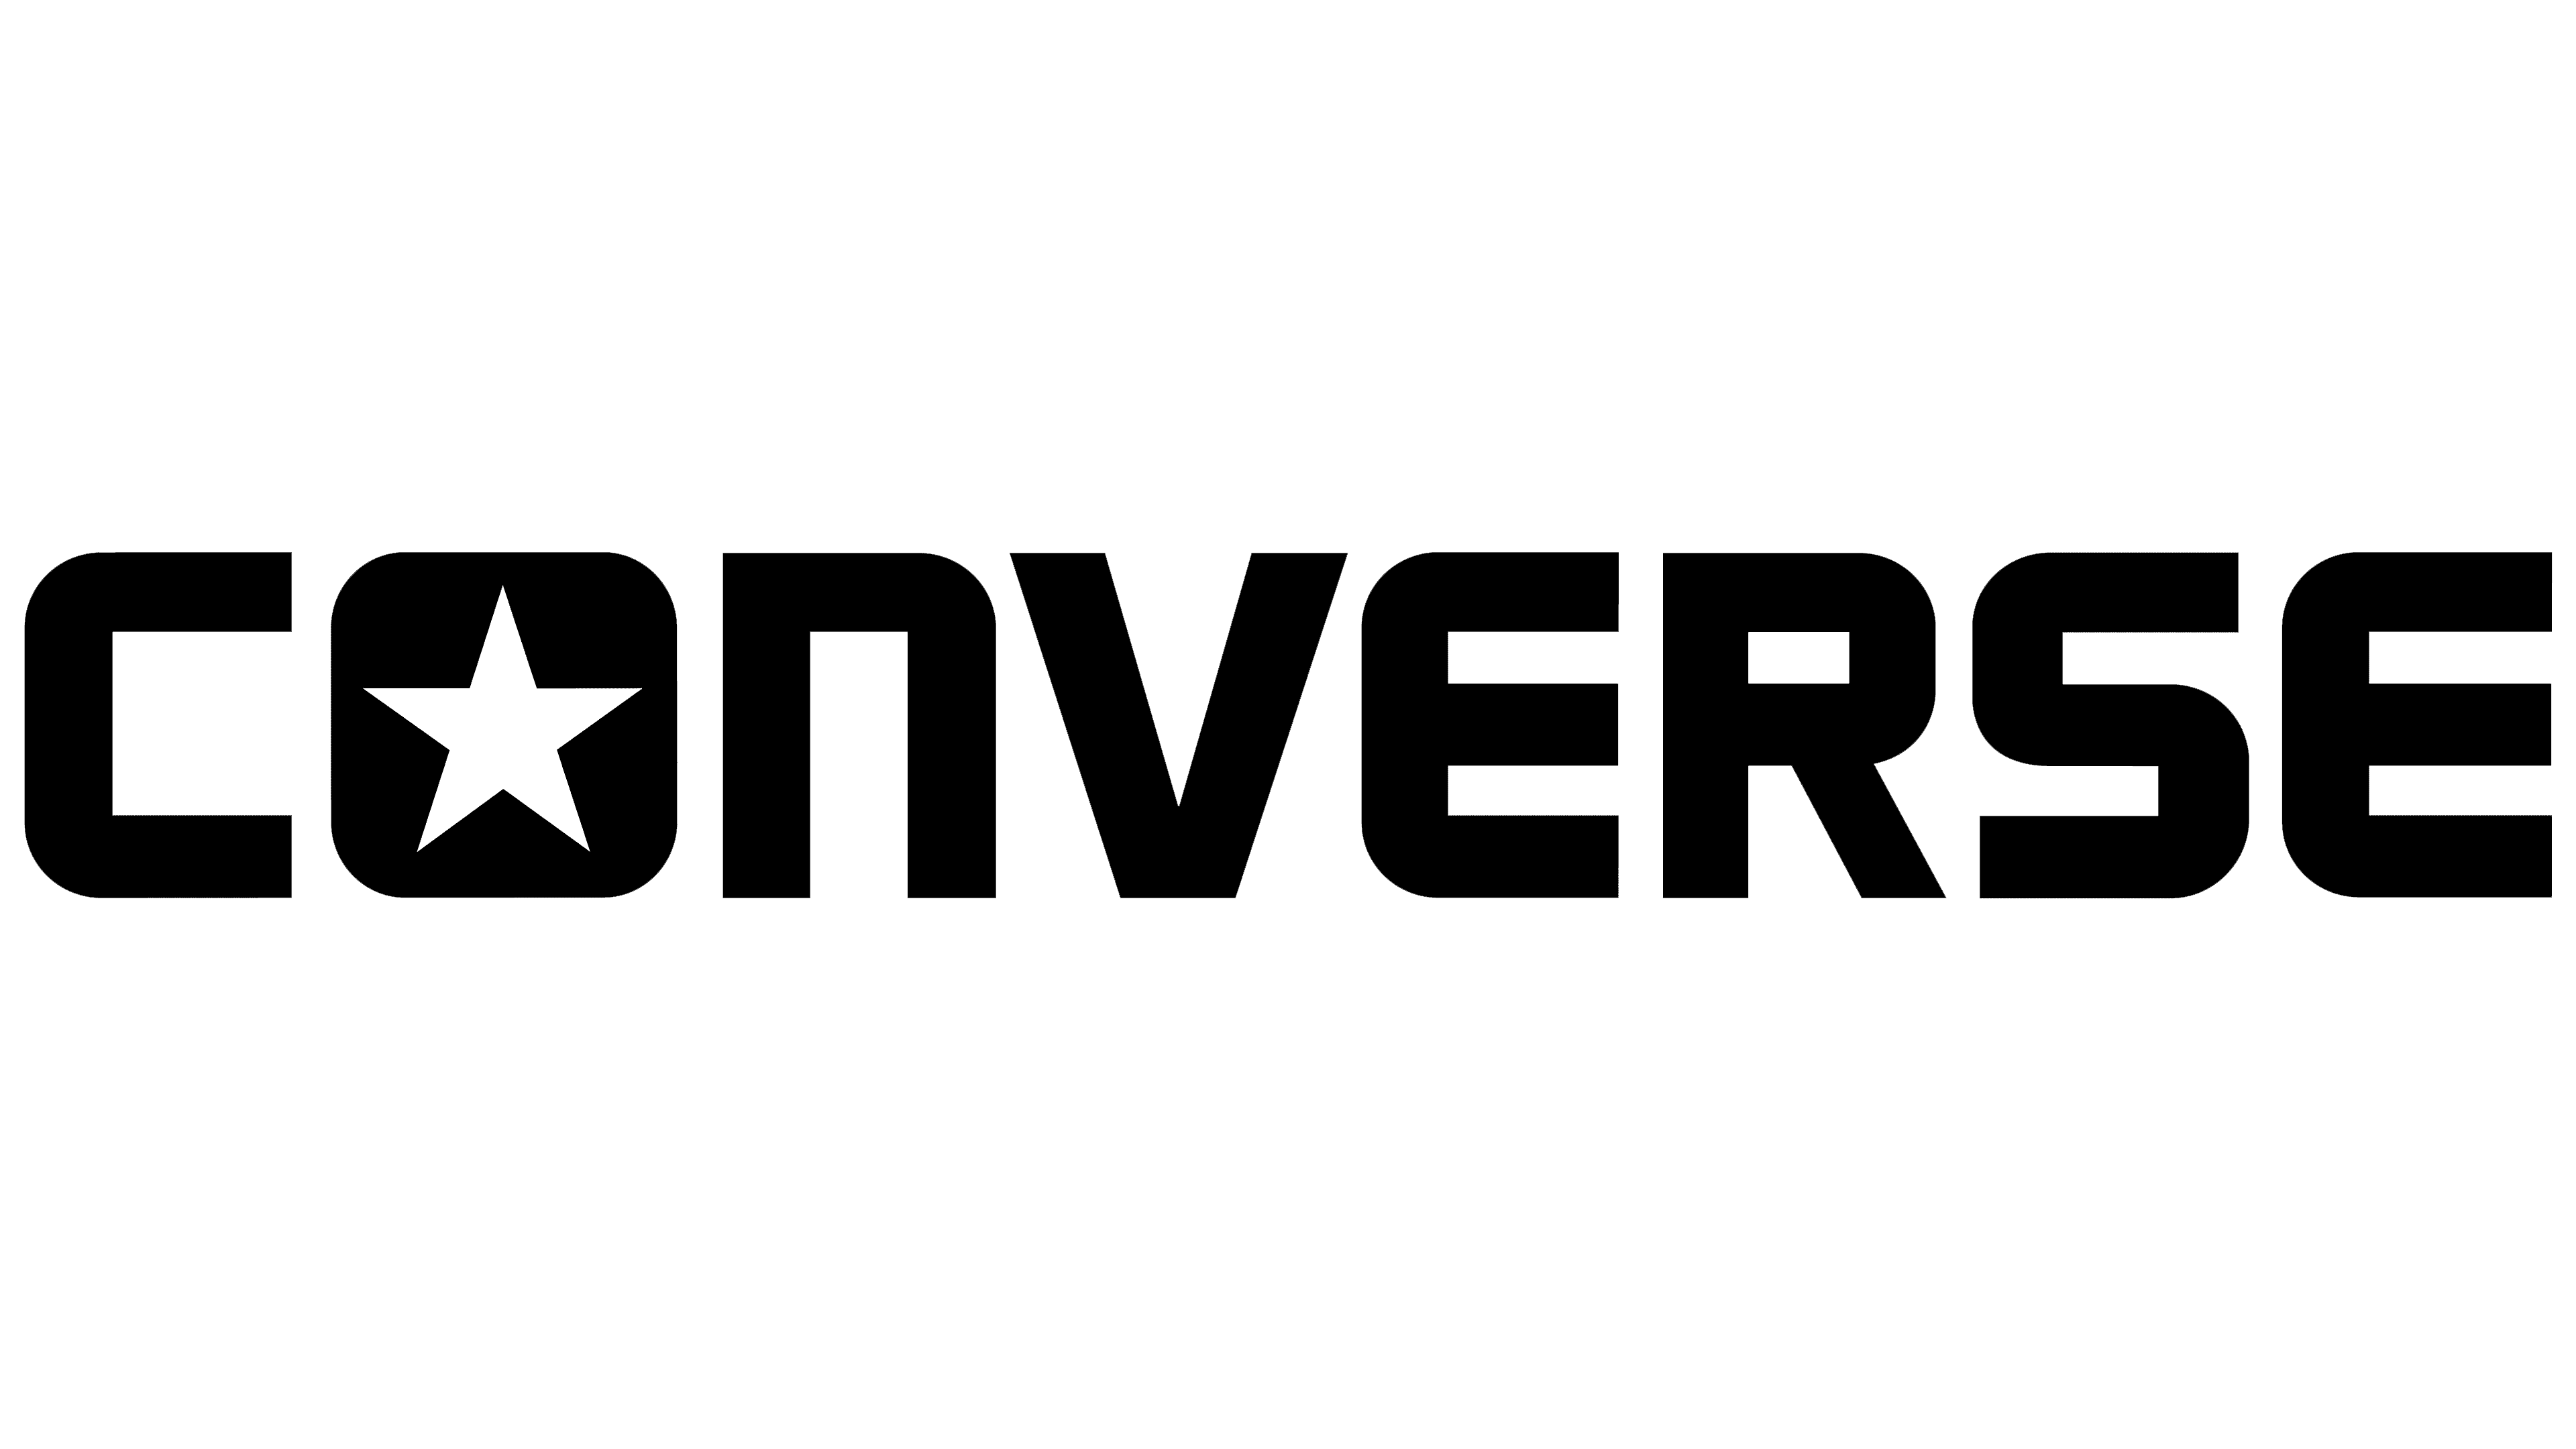 white converse logo png